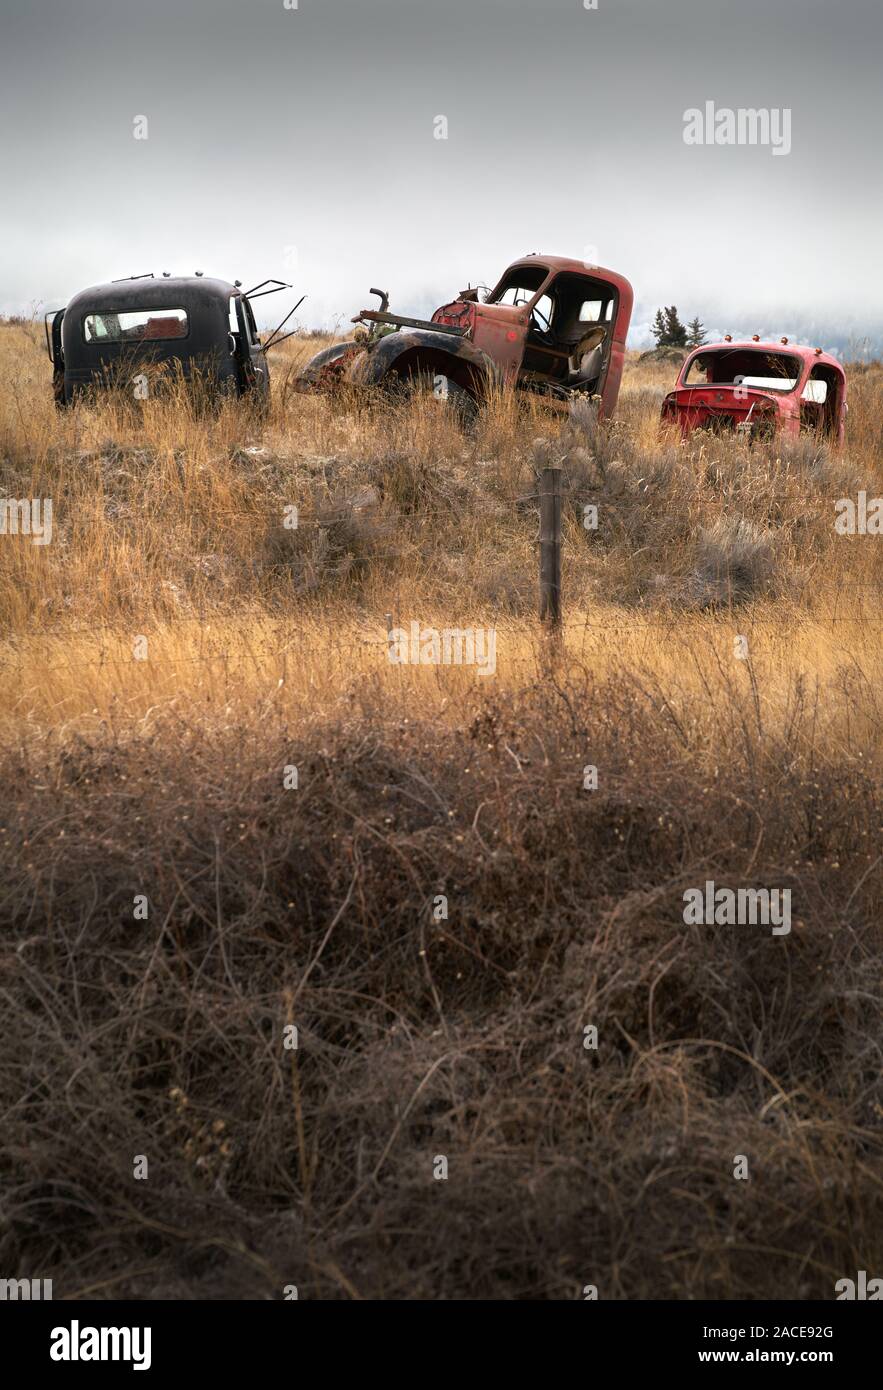 Automobili abbandonate Farmland. Vecchi carrelli abbandonati nel nord-ovest del Pacifico. Foto Stock